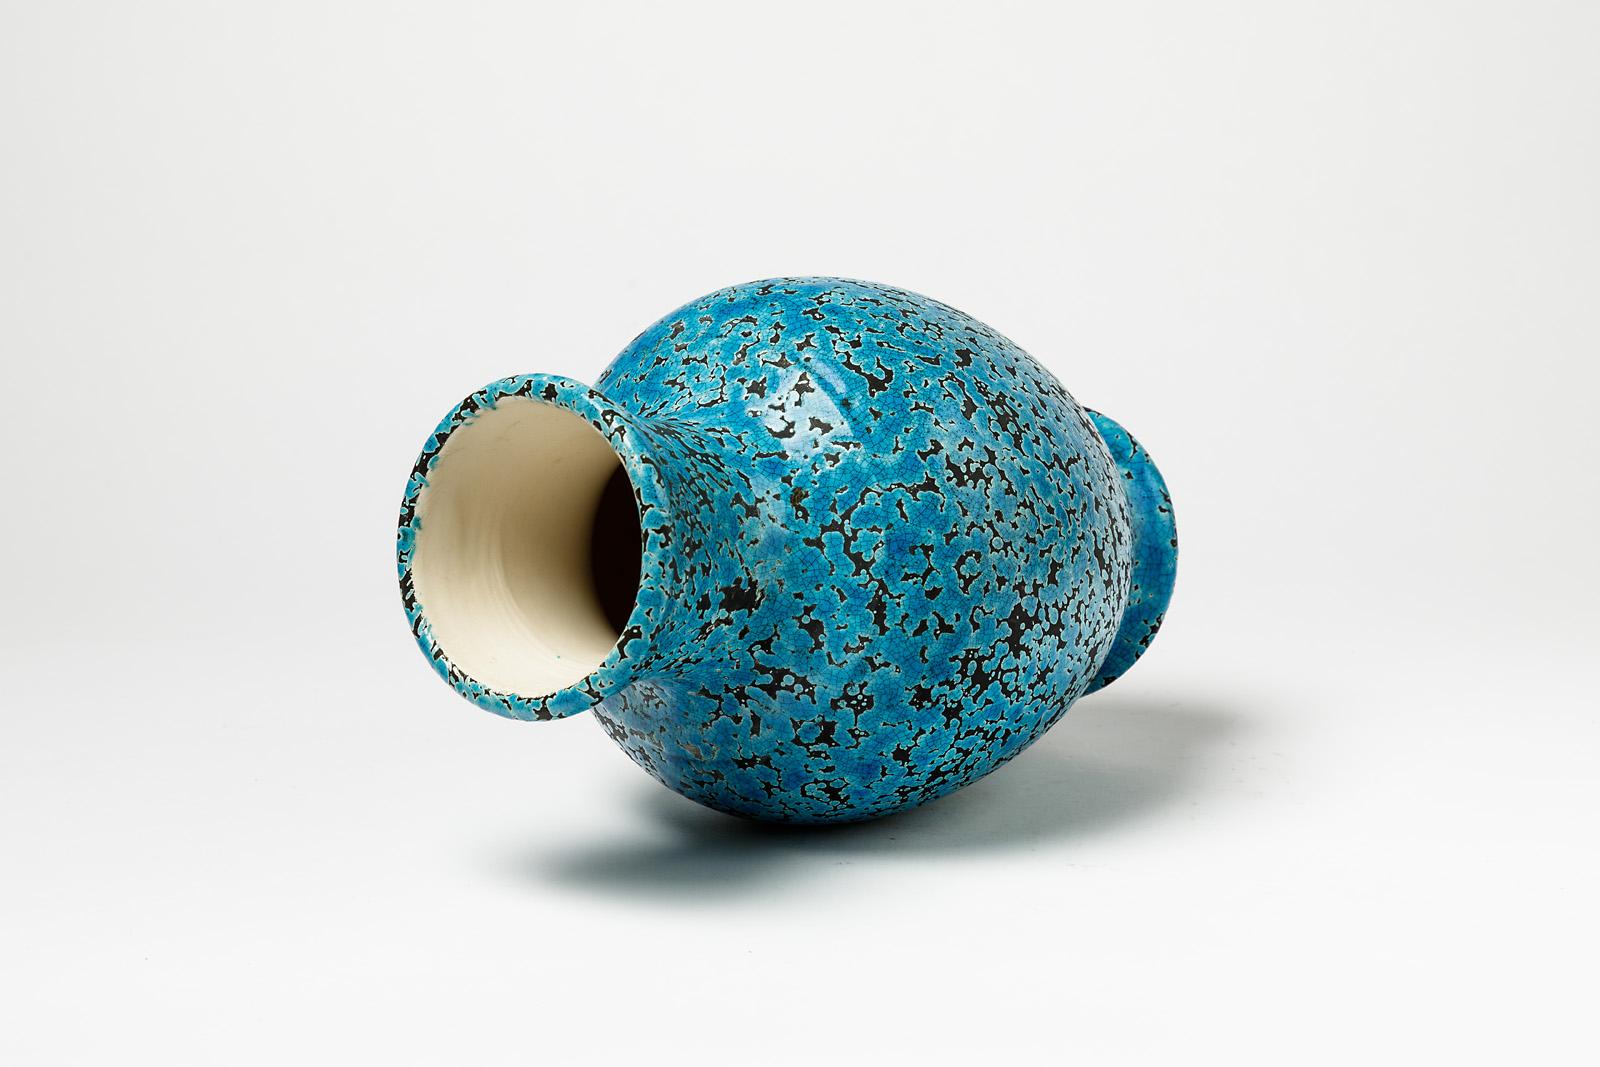 20th Century Decorative and Precious Midcentury Ceramic Blue Vase Dated 1965